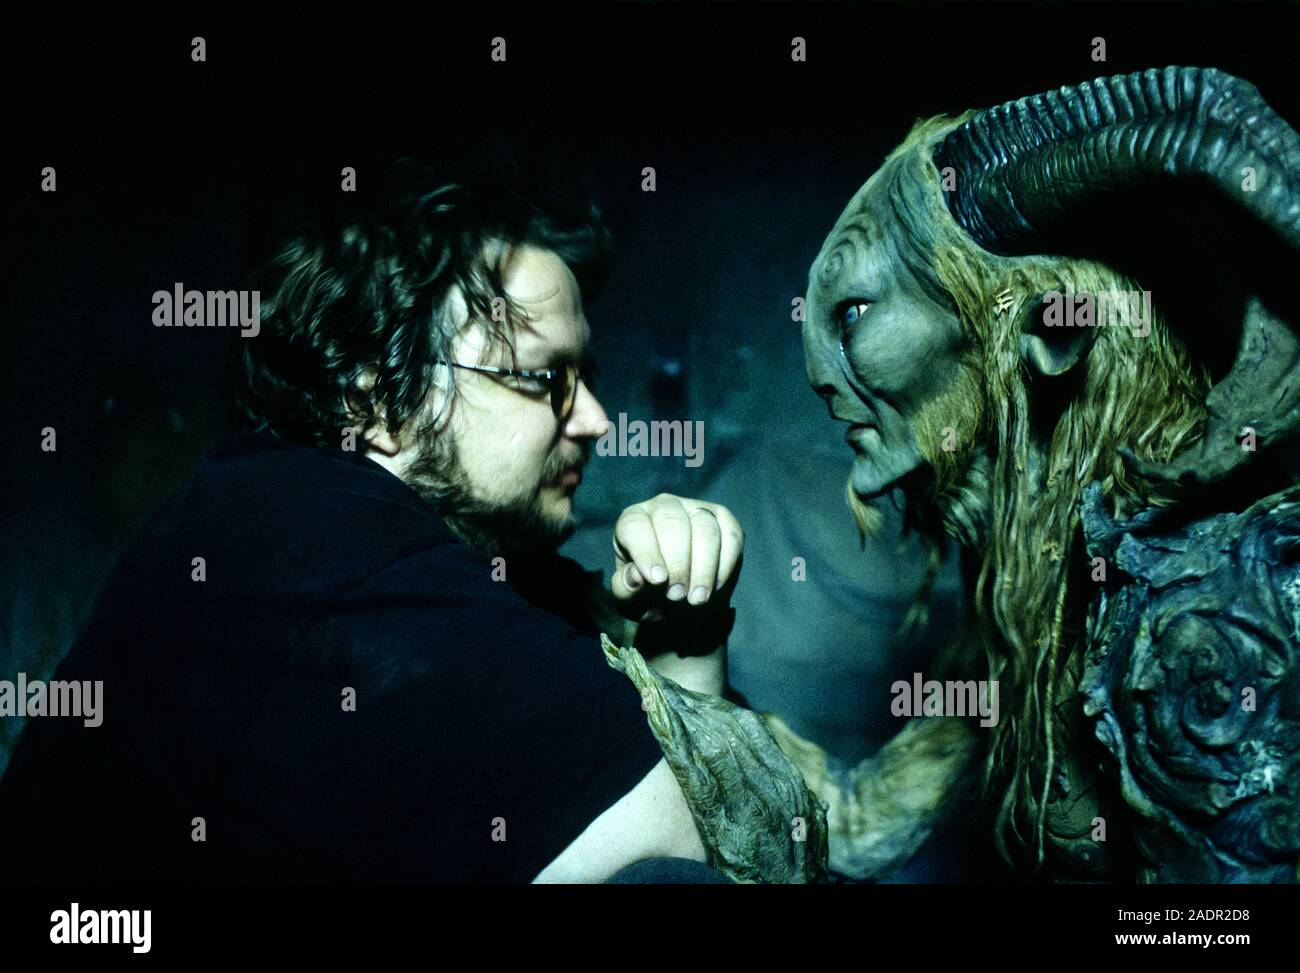 Guillermo del Toro am Set mit Doug Jones als Faun in vollem Make-up während der Herstellung von Pan's Labyrinth (2006) über ein junges Mädchen, das in Falangist Spanien über ein Mädchen, entkommt dem Horror um Sie durch Eingabe in eine seltsame Welt der Fantasie. Stockfoto